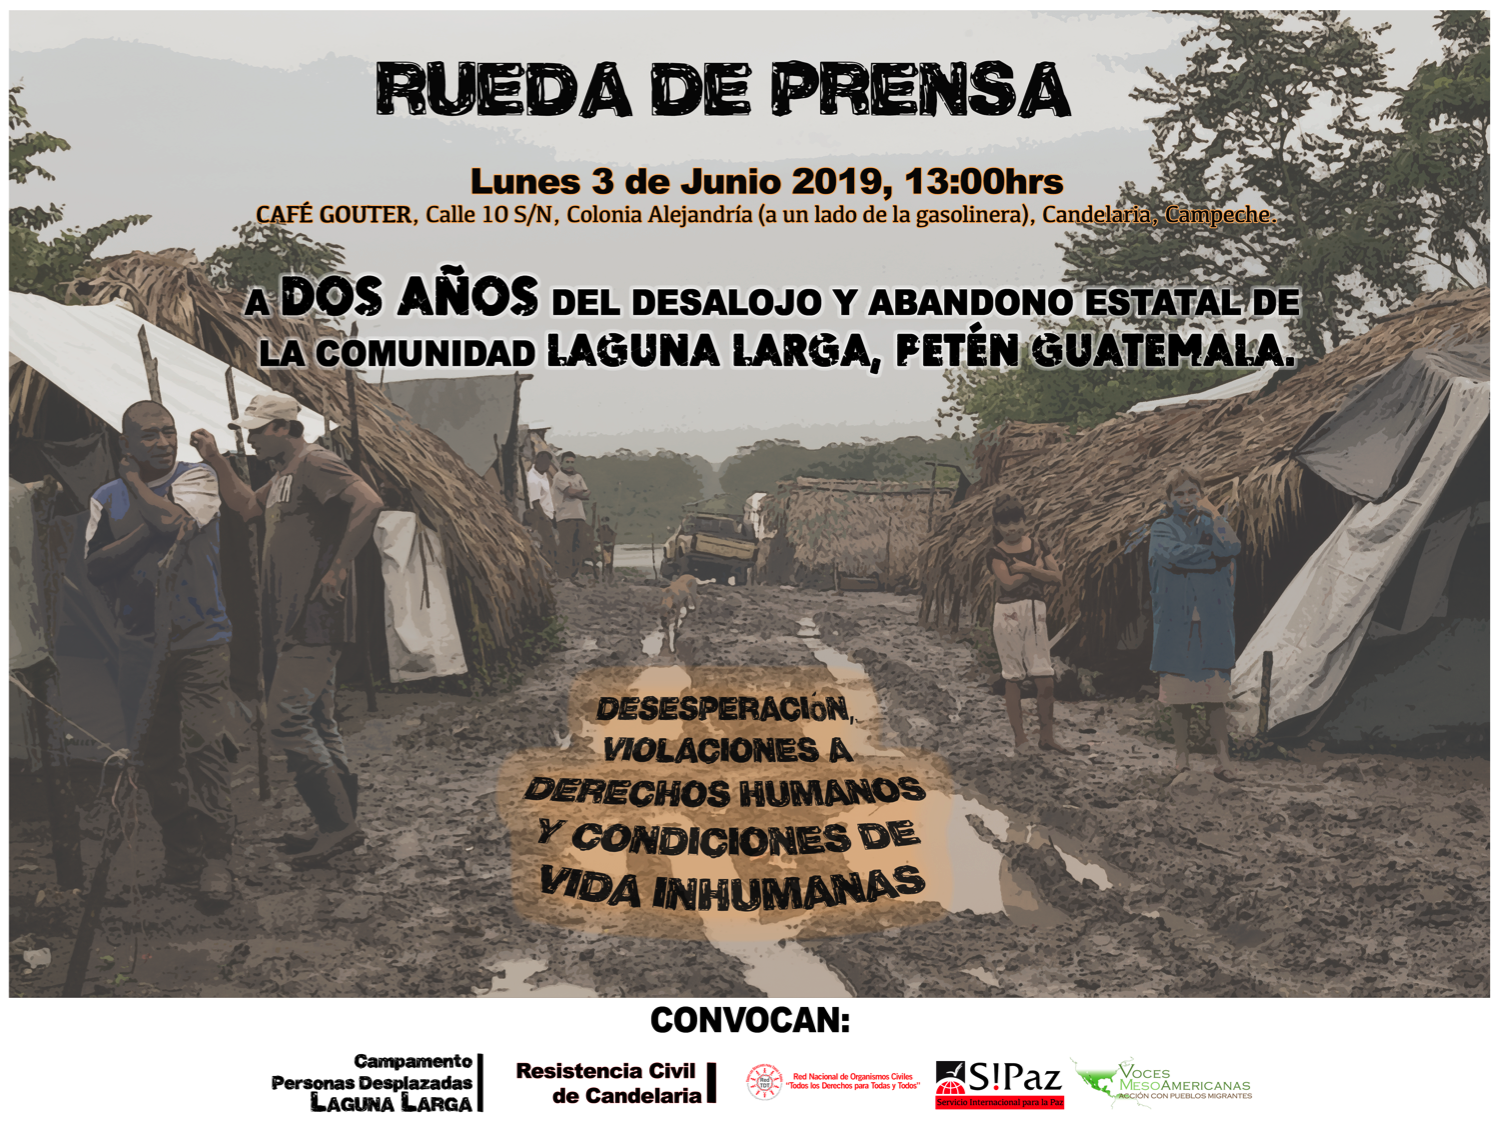 [INVITACIÓN] Conferencia de Prensa: A dos años del desalojo y abandono estatal de la comunidad Laguna Larga, Petén Guatemala.